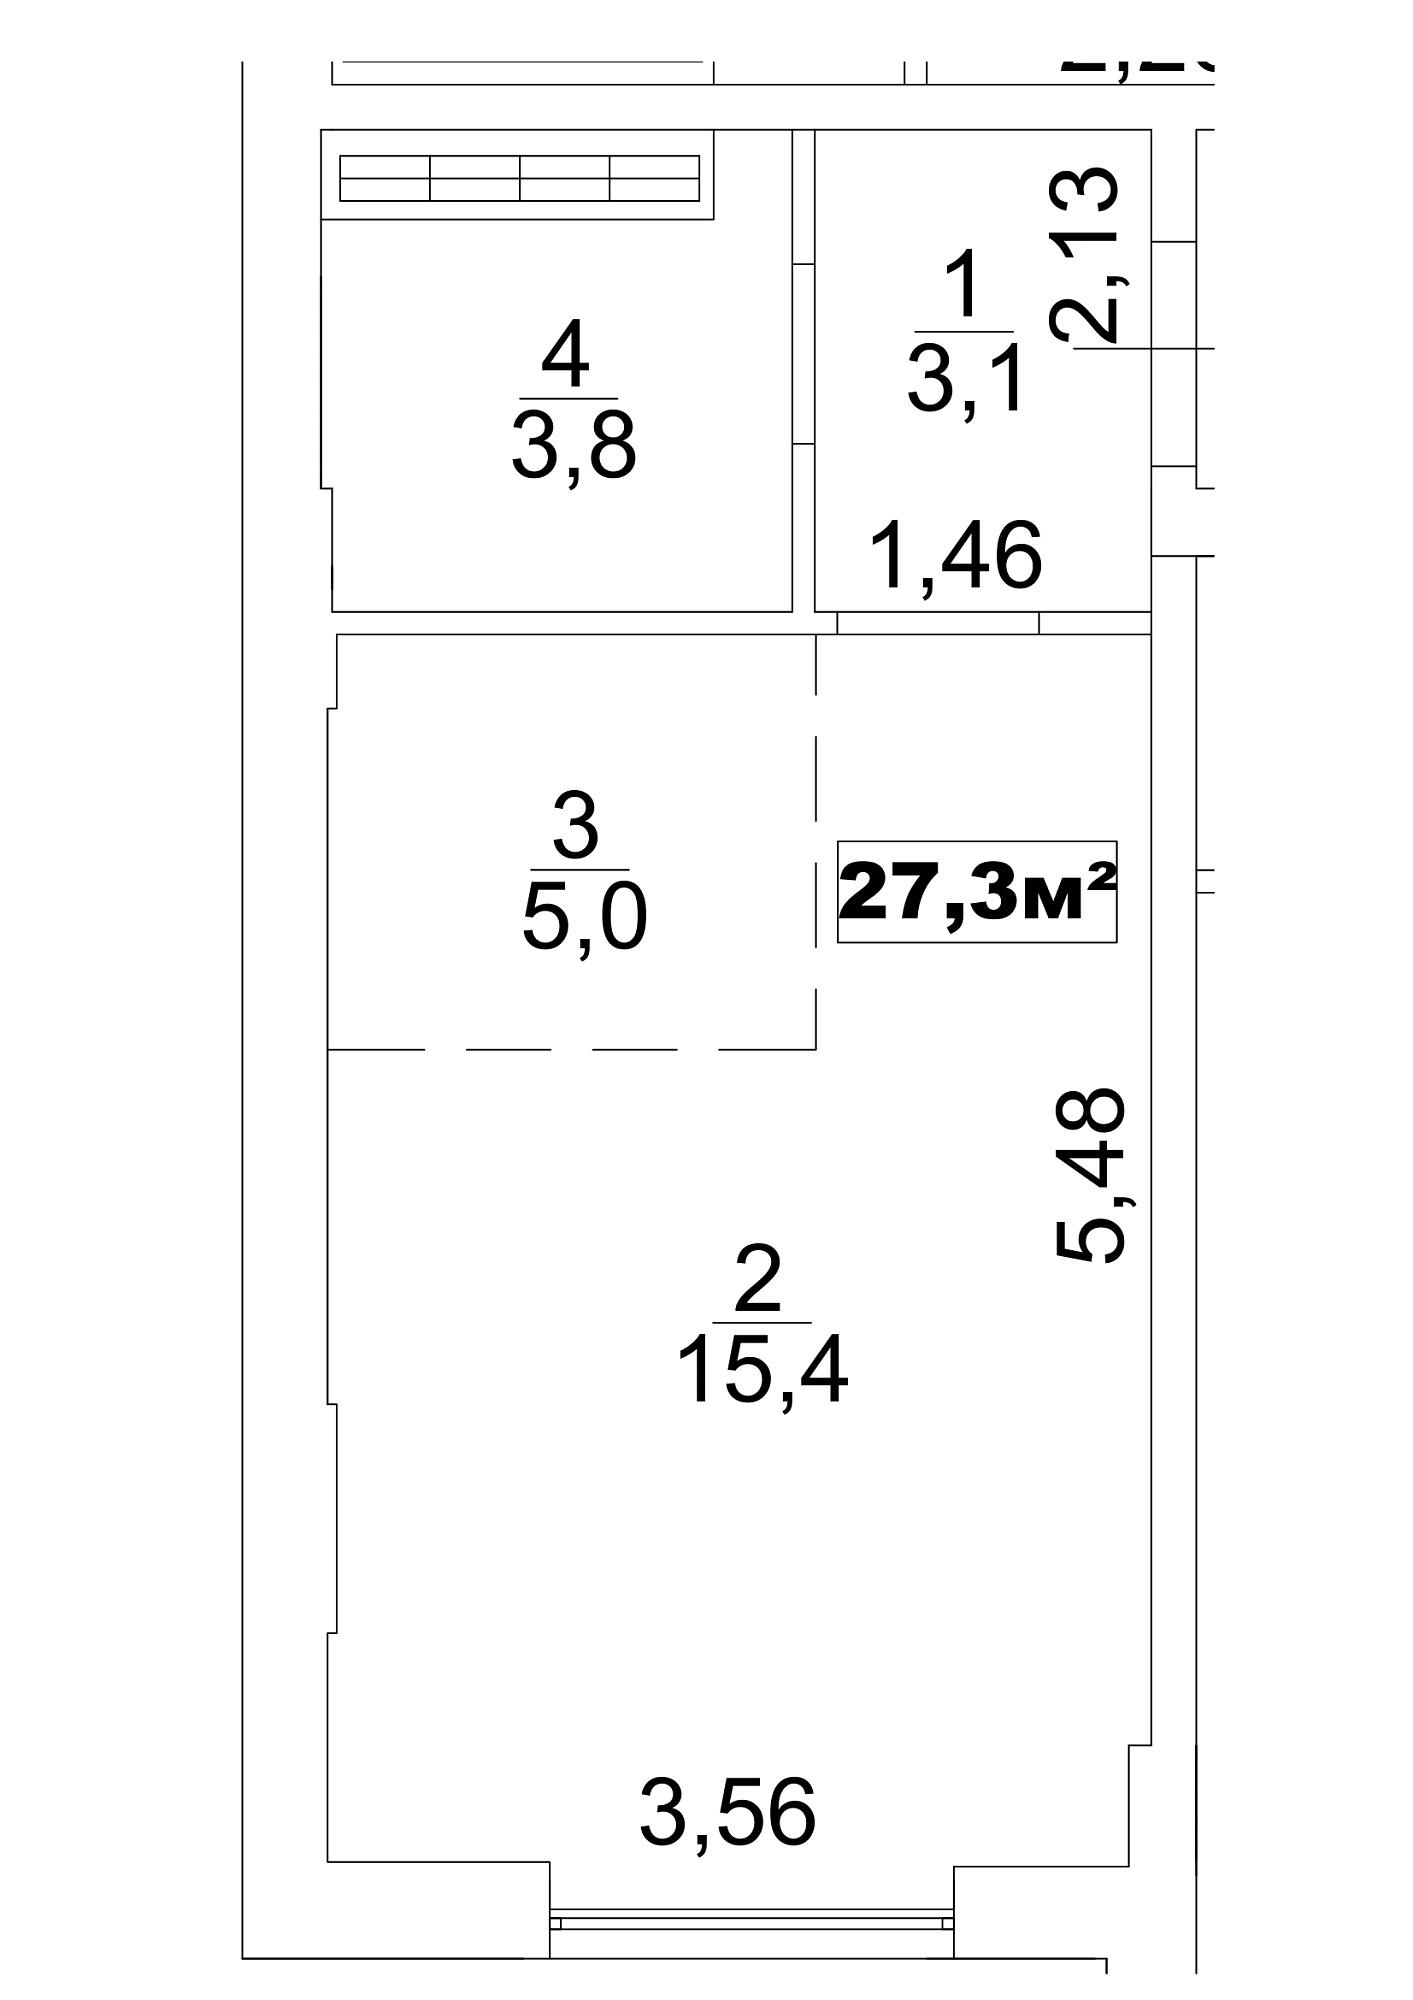 Планировка Smart-квартира площей 27.3м2, AB-13-05/0036а.